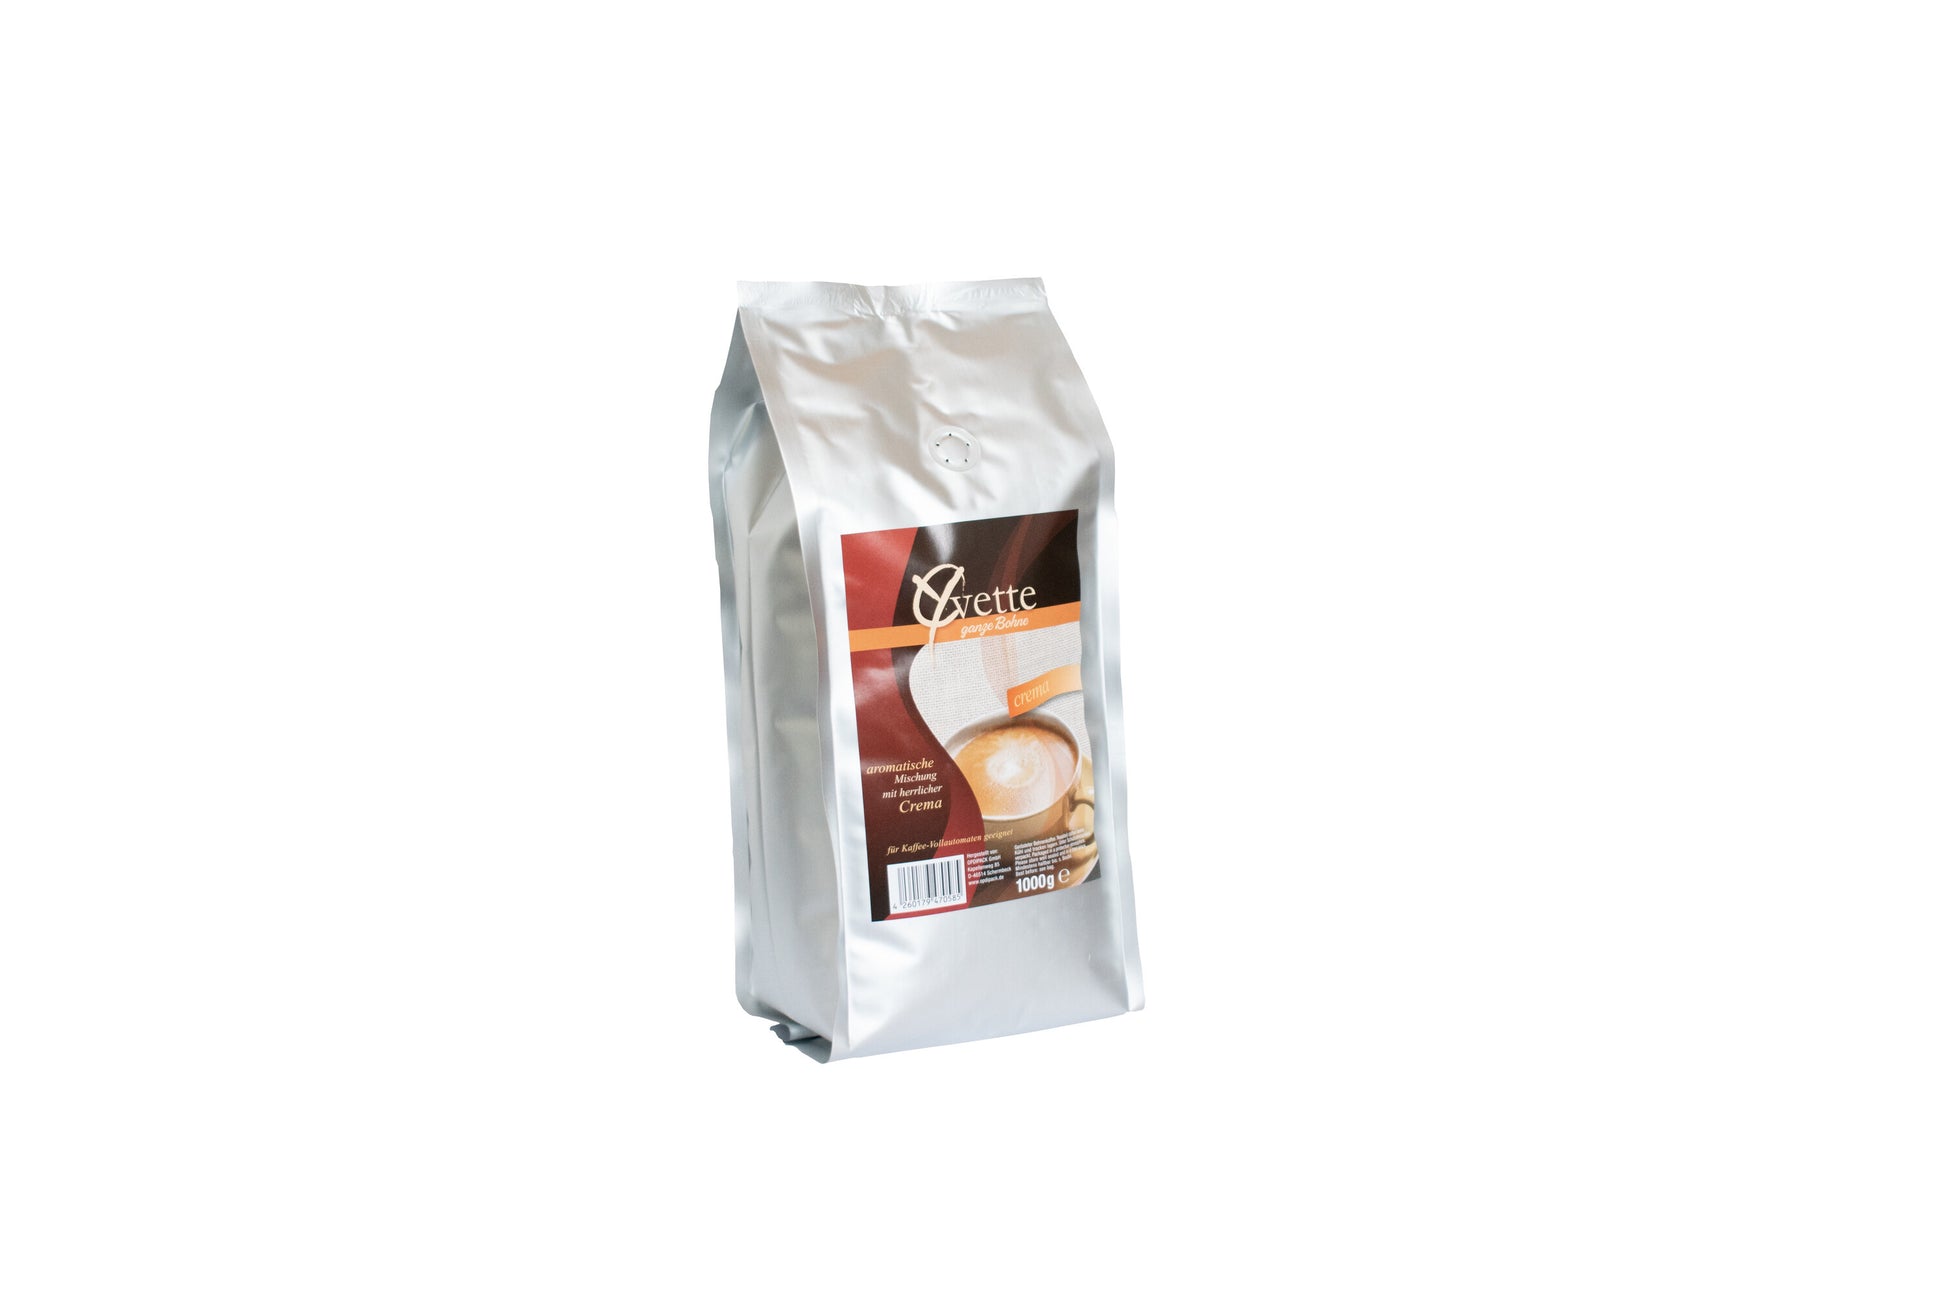 Ein leicht gedrehter silberner Beutel mit 1000g frisch gerösteten Crema-Kaffeebohnen der Marke Yvette Kaffee. Der Beutel zeigt das Logo der Marke und die Produktbezeichnung. Auf dem Etikett ist eine Tasse Kaffee, die ein Gefühl von Frische und Qualität vermitteln.